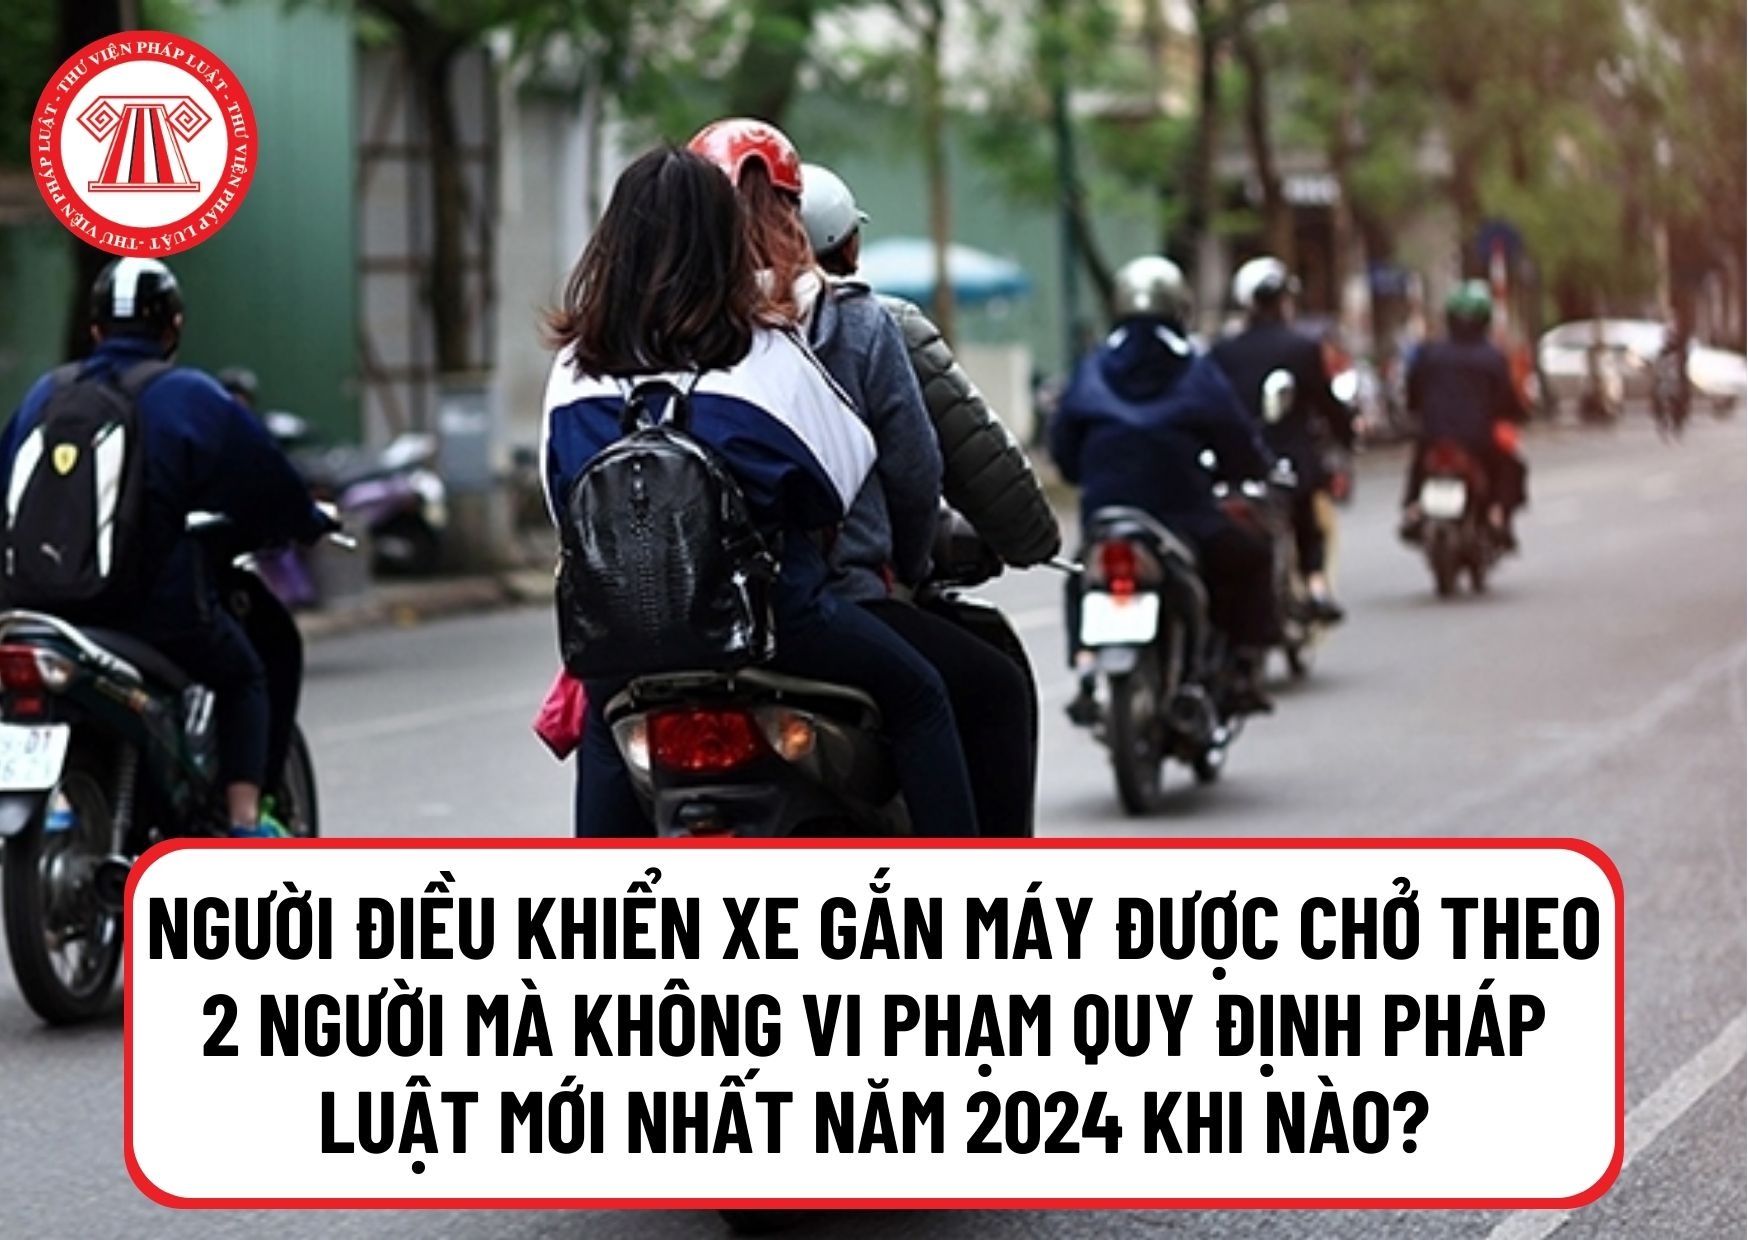 Trường hợp người điều khiển xe gắn máy được chở theo 2 người mà không vi phạm quy định pháp luật mới nhất năm 2024 là gì?